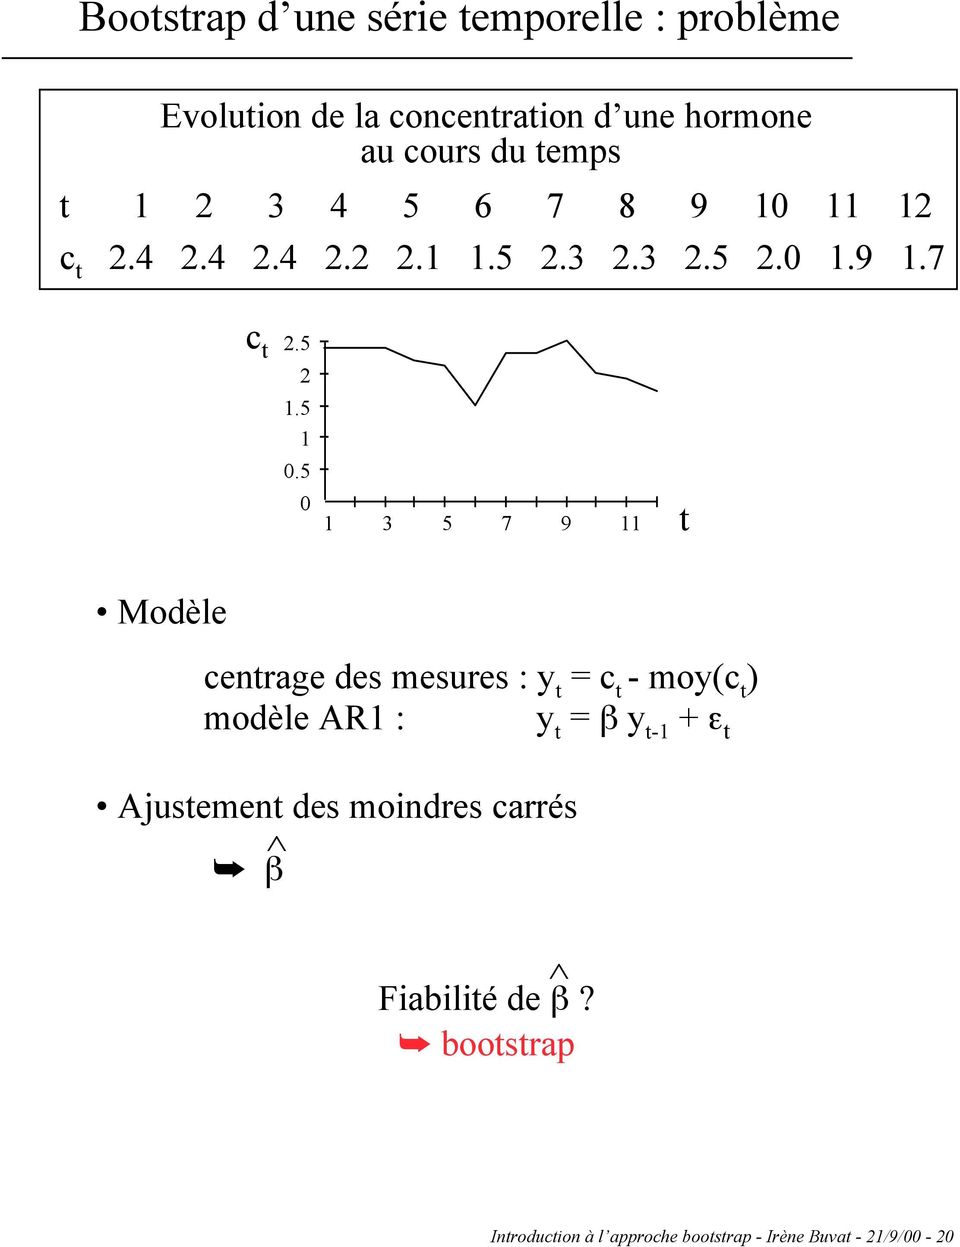 Modèle centrage des mesures : y t = c t - moy(c t ) modèle AR1 : y t = b y t-1 + e t Ajustement des